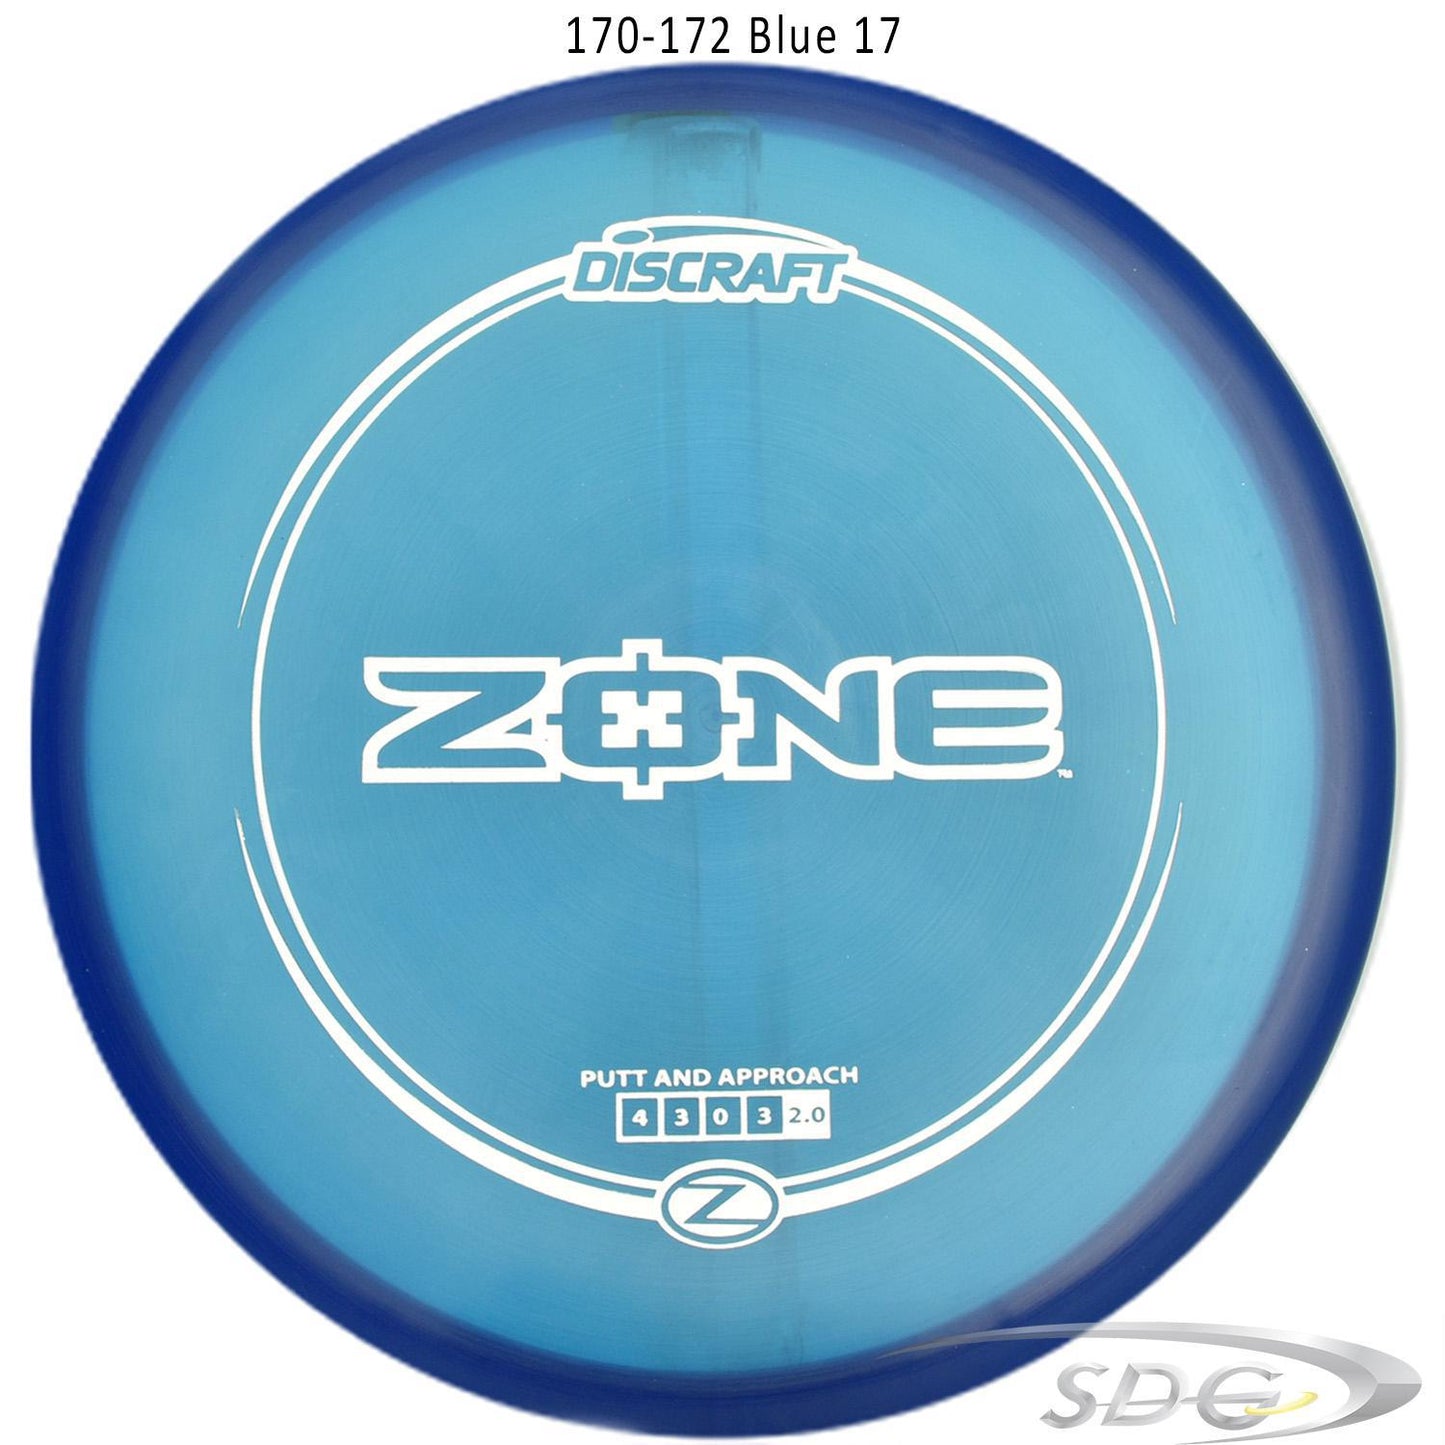 discraft-z-line-zone-disc-golf-putter 170-172 Blue 17